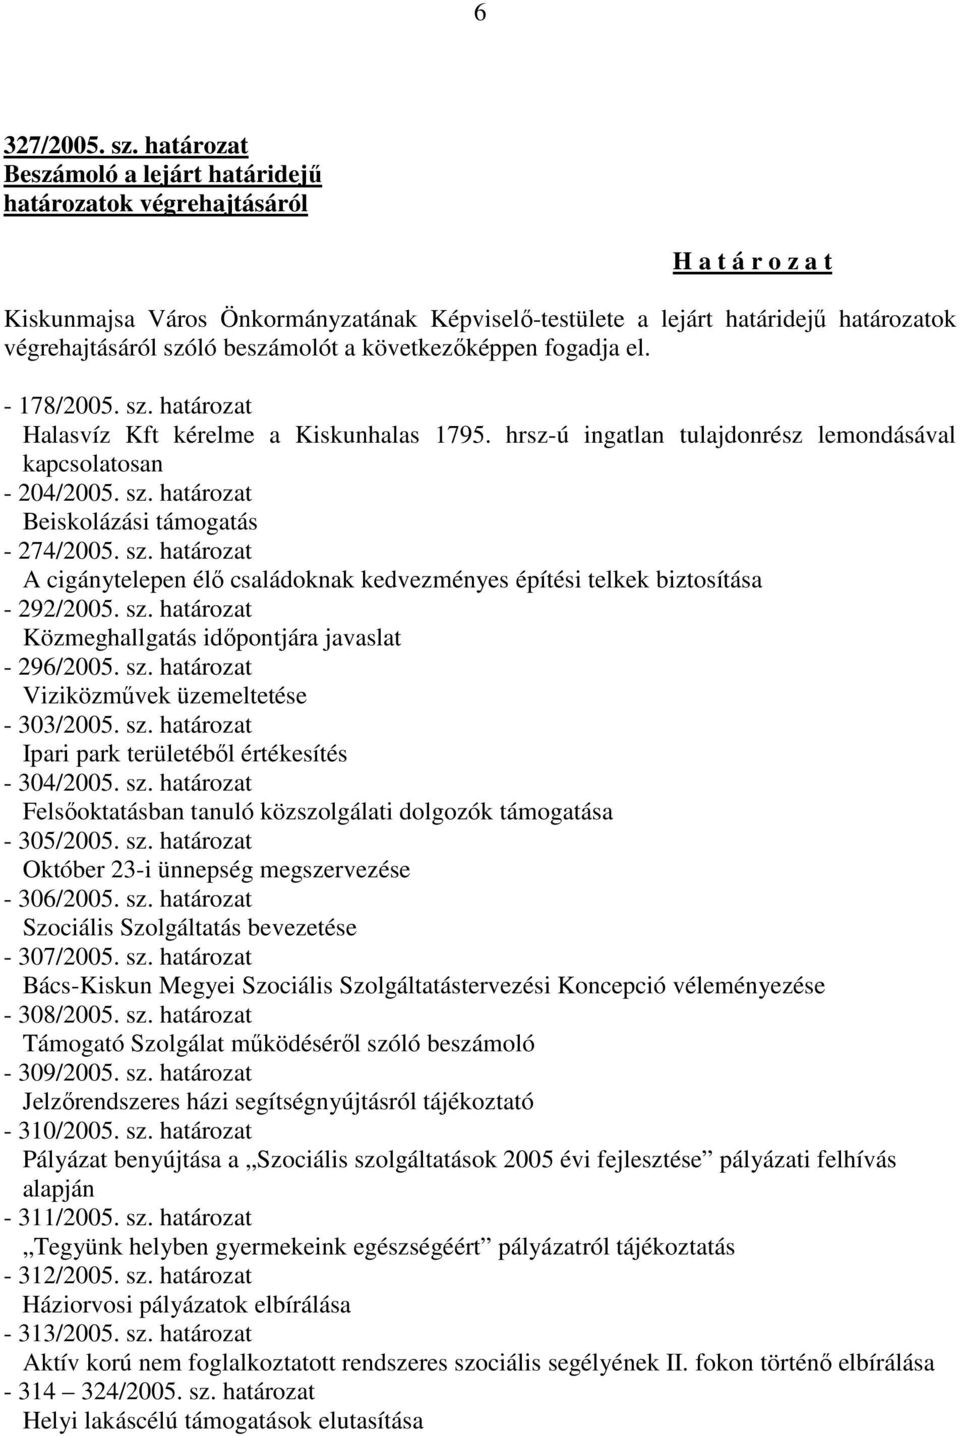 beszámolót a következőképpen fogadja el. - 178/2005. sz. határozat Halasvíz Kft kérelme a Kiskunhalas 1795. hrsz-ú ingatlan tulajdonrész lemondásával kapcsolatosan - 204/2005. sz. határozat Beiskolázási támogatás - 274/2005.